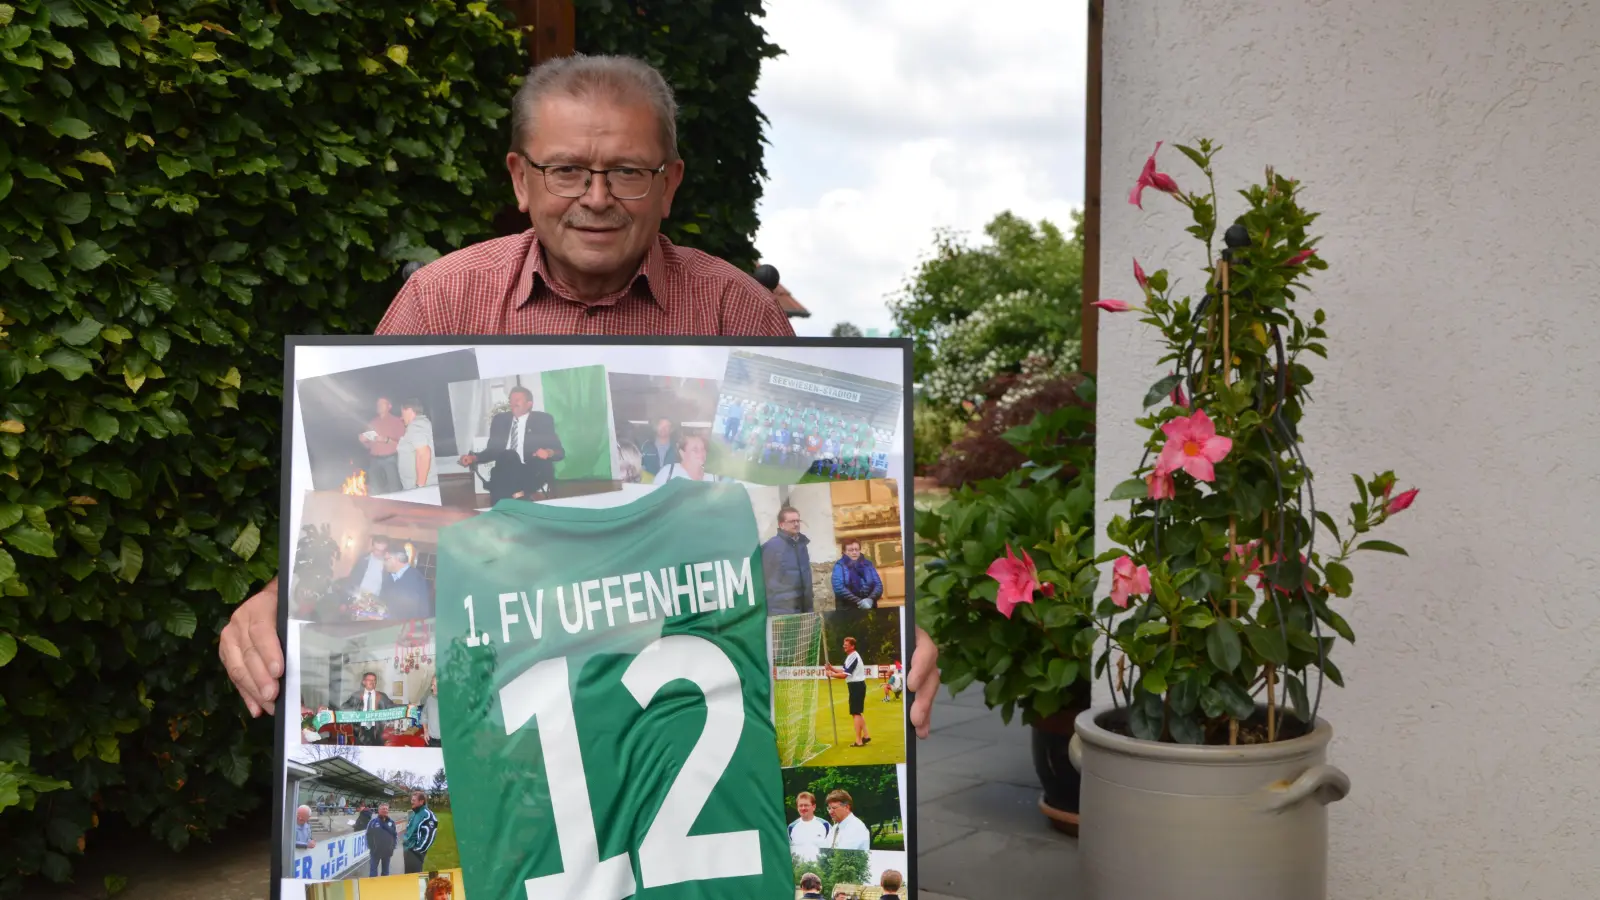 Siegfried Hümmer ist FVU-Urgestein. Nach 30 Jahren gibt er nun den Posten als Abteilungs- und Spielleiter ab und ist dankbar für den Einsatz all seiner Wegbegleiter. (Foto: Johannes Zimmermann)